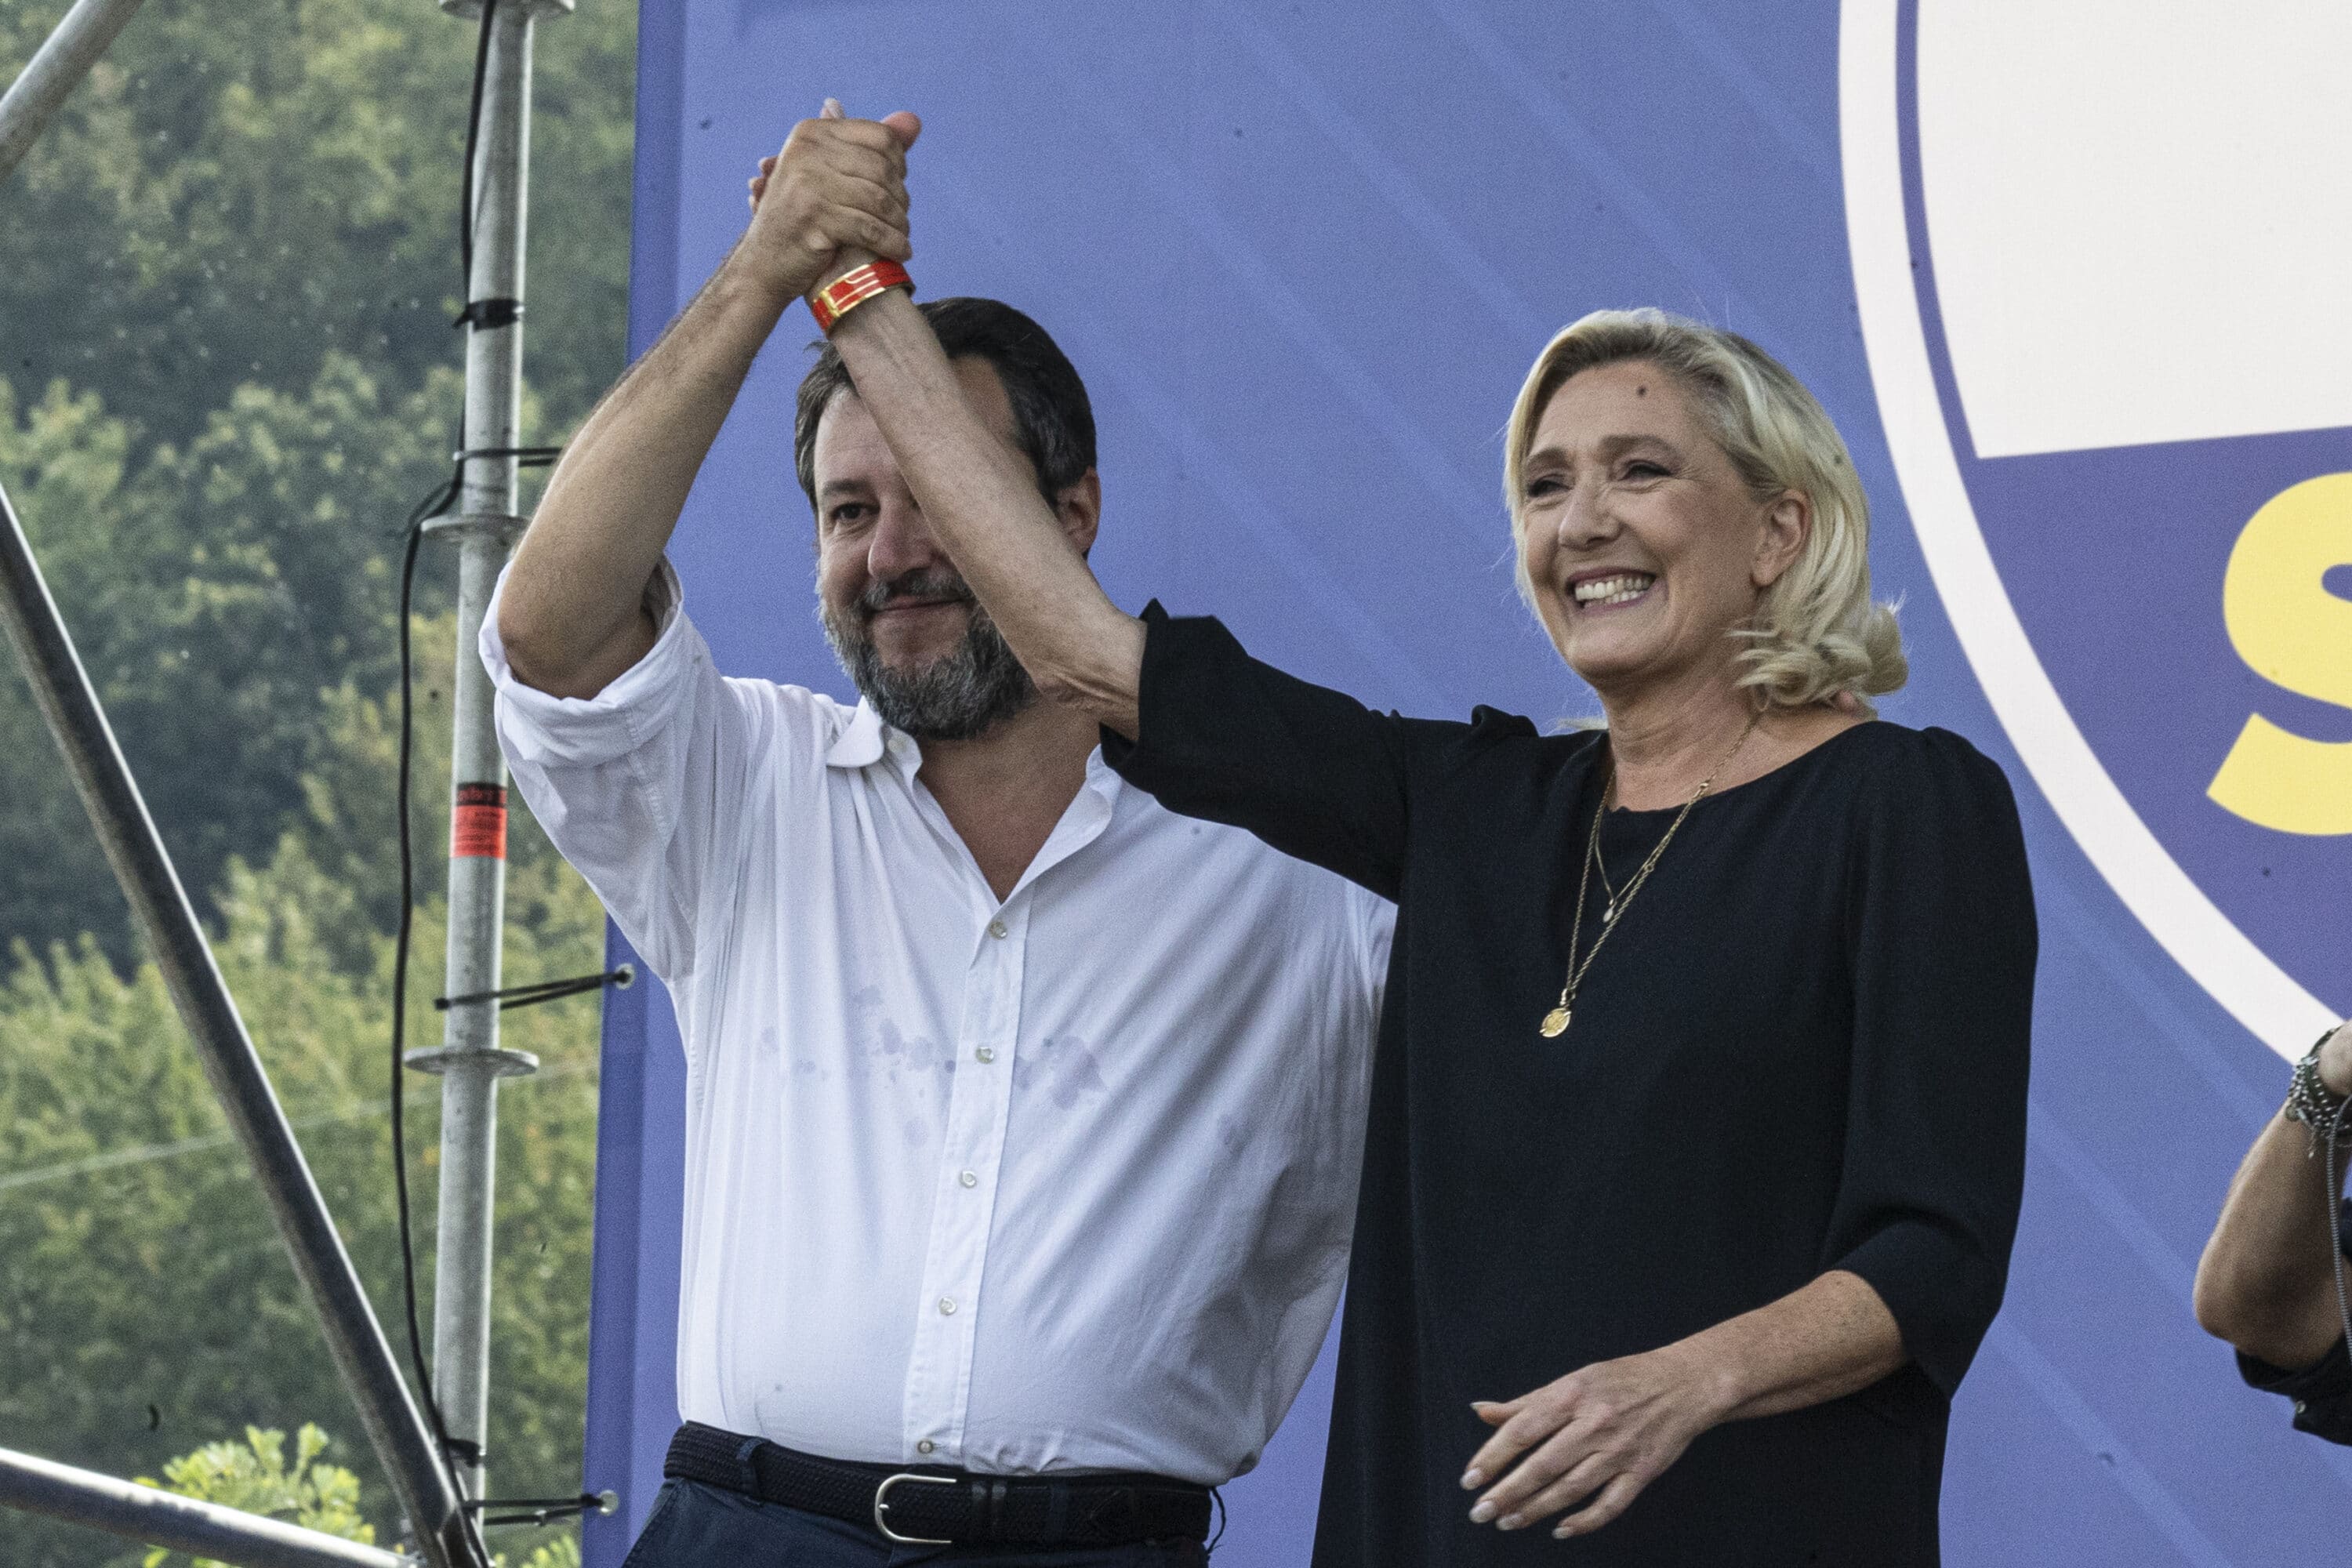 Le Pen rompe con l’Afd e Salvini si accoda: i tedeschi fuori dal gruppo parlamentare in Ue